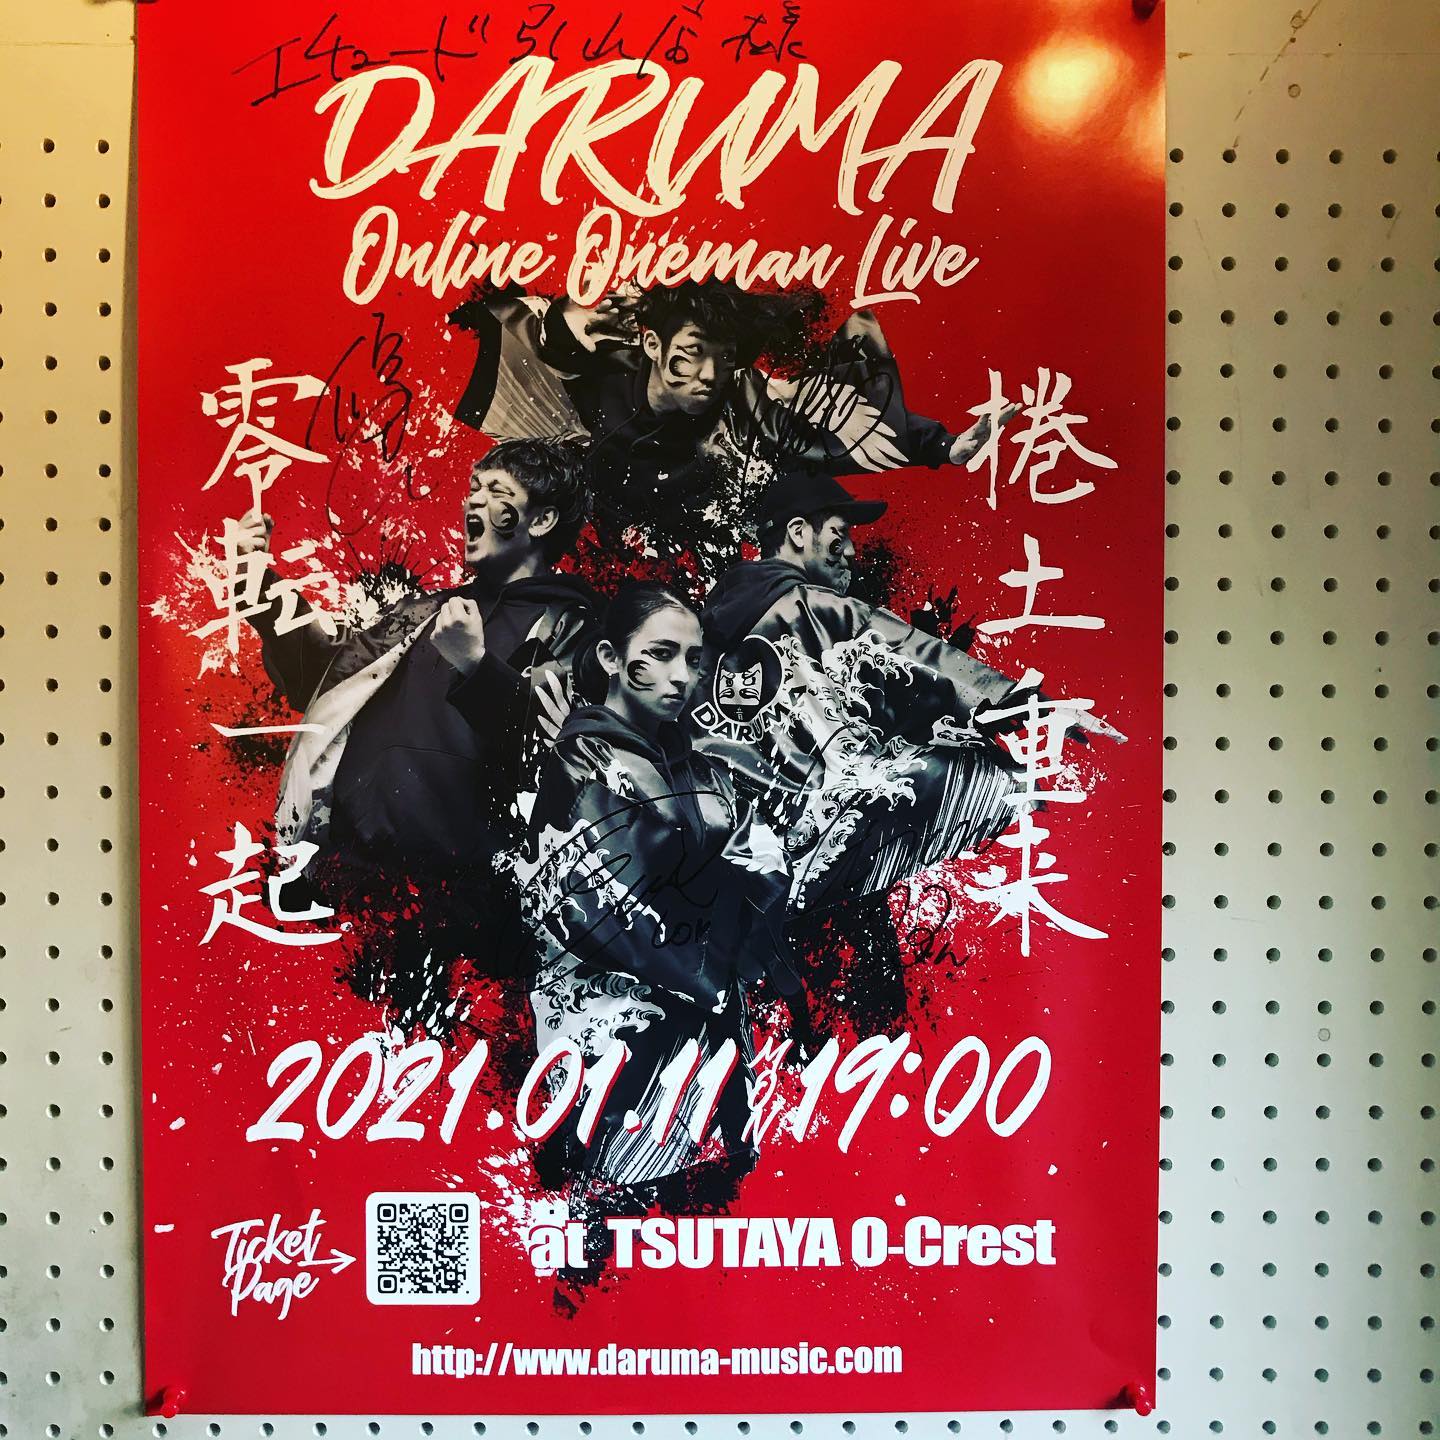 昨日、 @daruma.music のメンバーがご来店されました来年1月11日に行われるオンラインライブのポスターも店内に貼っております。是非ご覧ください。スタジオのご予約、お問い合わせはこちらまでお願いします。tel 052-760-6607#DARUMA#ダルマ #名古屋市千種区 #香流橋東 #インスタスポット#コロナ対策 #スタジオ #音楽スタジオ #安い音楽スタジオ #格安音楽スタジオ #激安音楽スタジオ #リハスタ #リハーサルスタジオ #ライブ配信 #生配信 #17live #17ライブ #17ライブ配信 #イチナナ #イチナナ配信 #インスタライブ #インスタ配信 #レコスタ #レコーディングスタジオ #音楽教室 #個人練習 #バンド練習 #レンタルオフィス #レンタルスペース #musicstudio